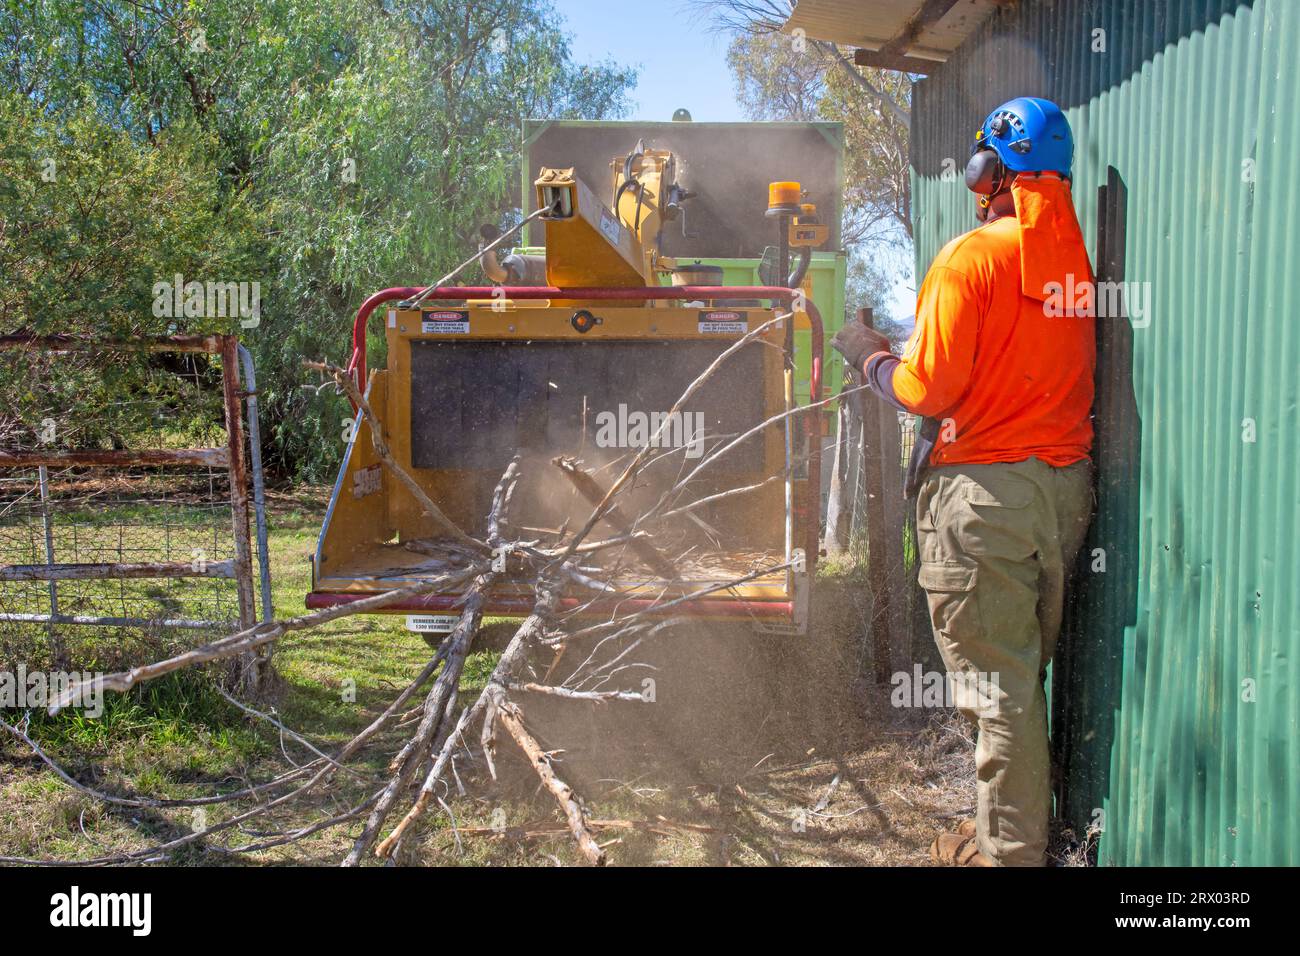 A man feeding tree brnches into a chipper or mulching machine at an Australian farm yard. Stock Photo